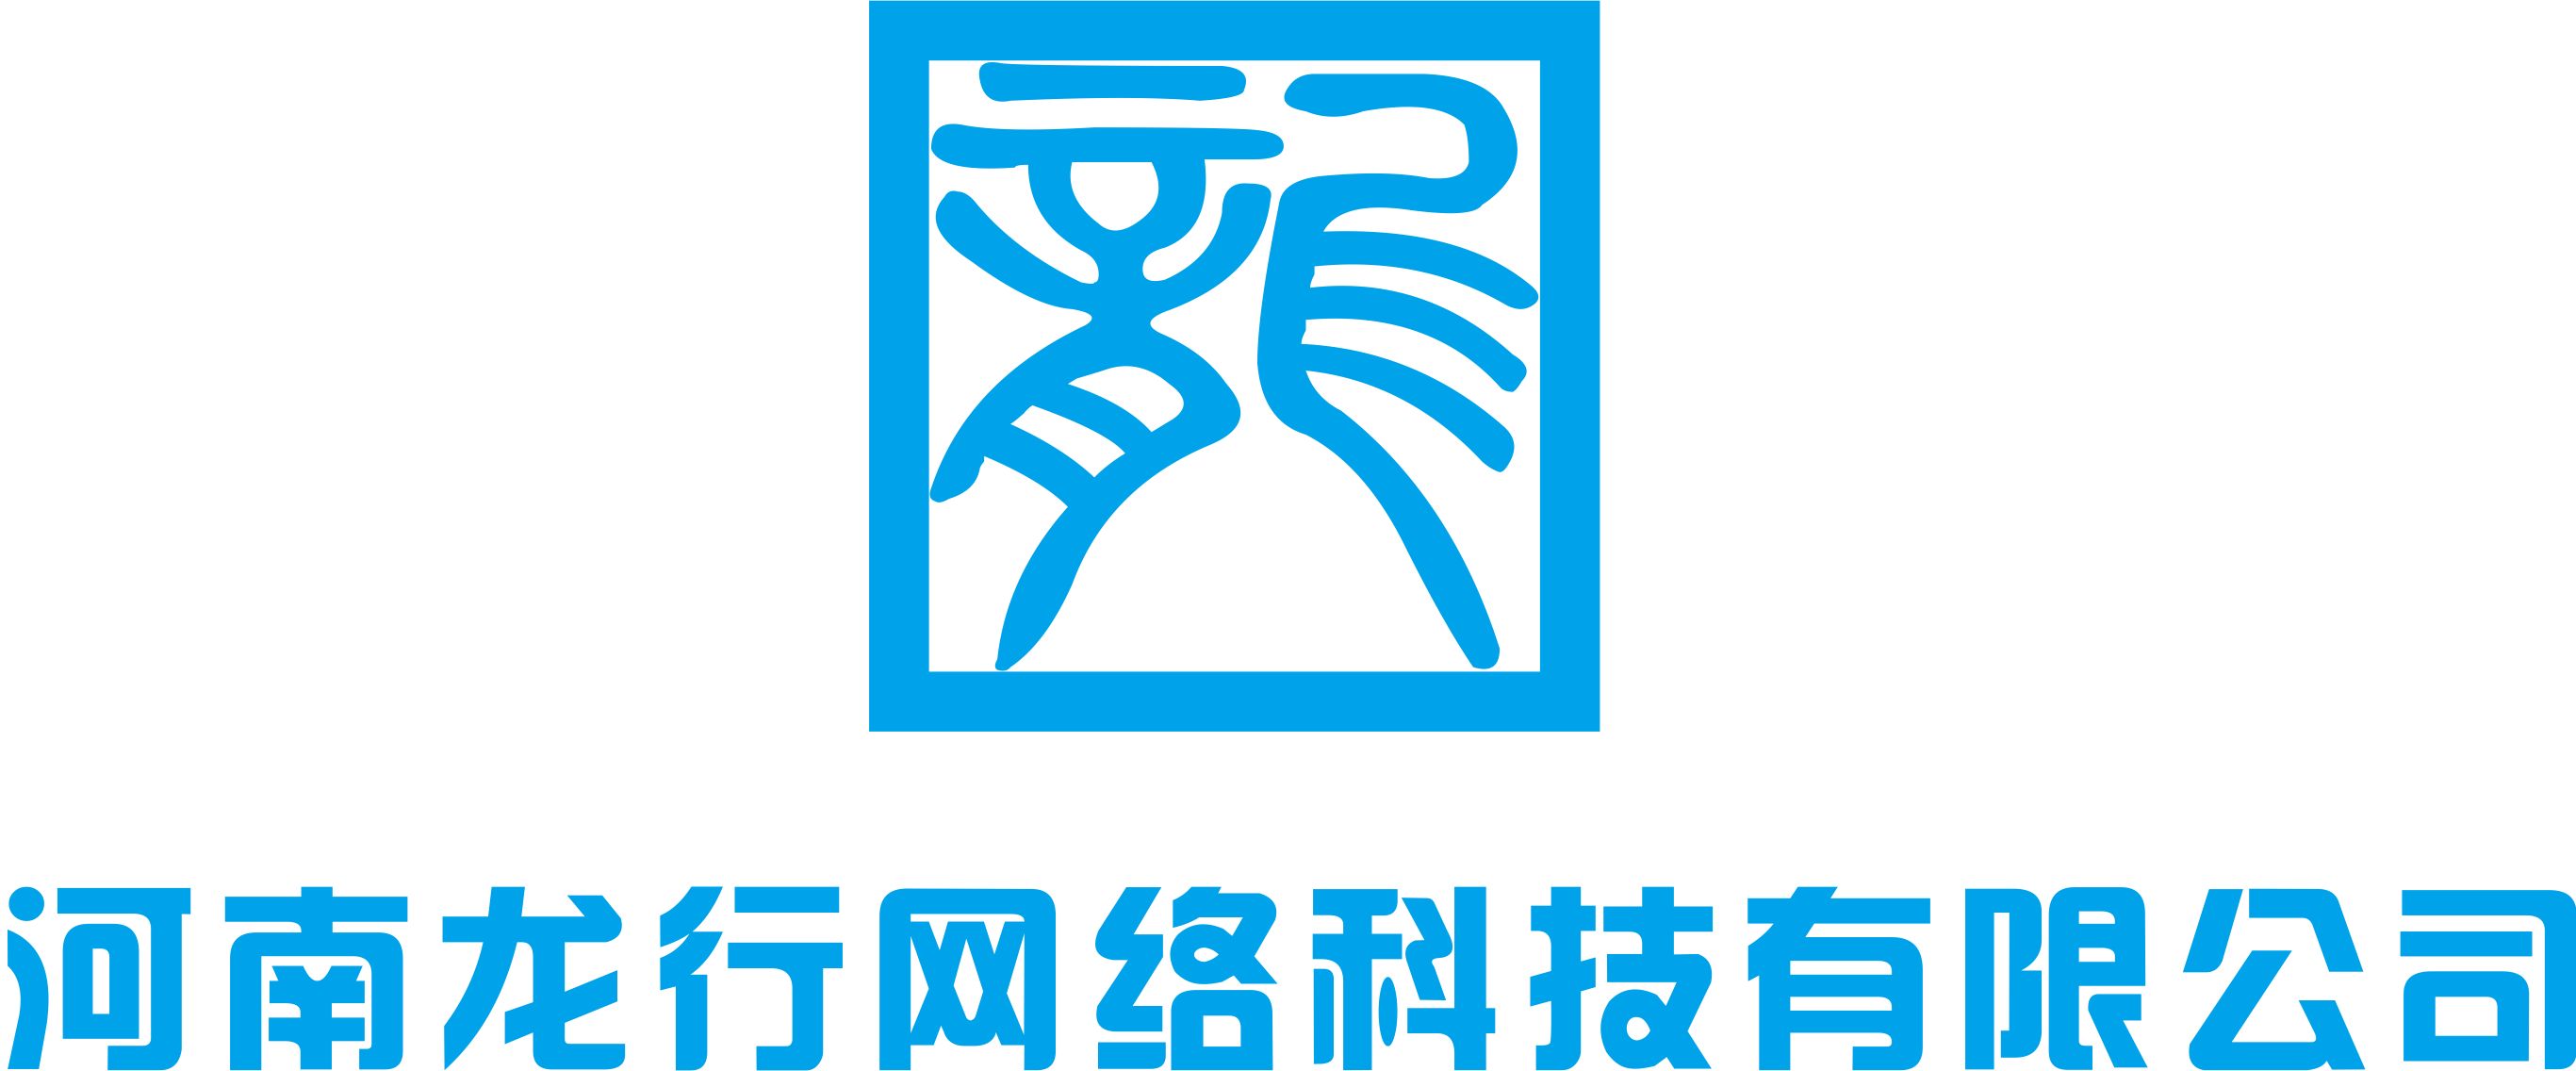 河南龙行网络科技有限公司桌面图标设计